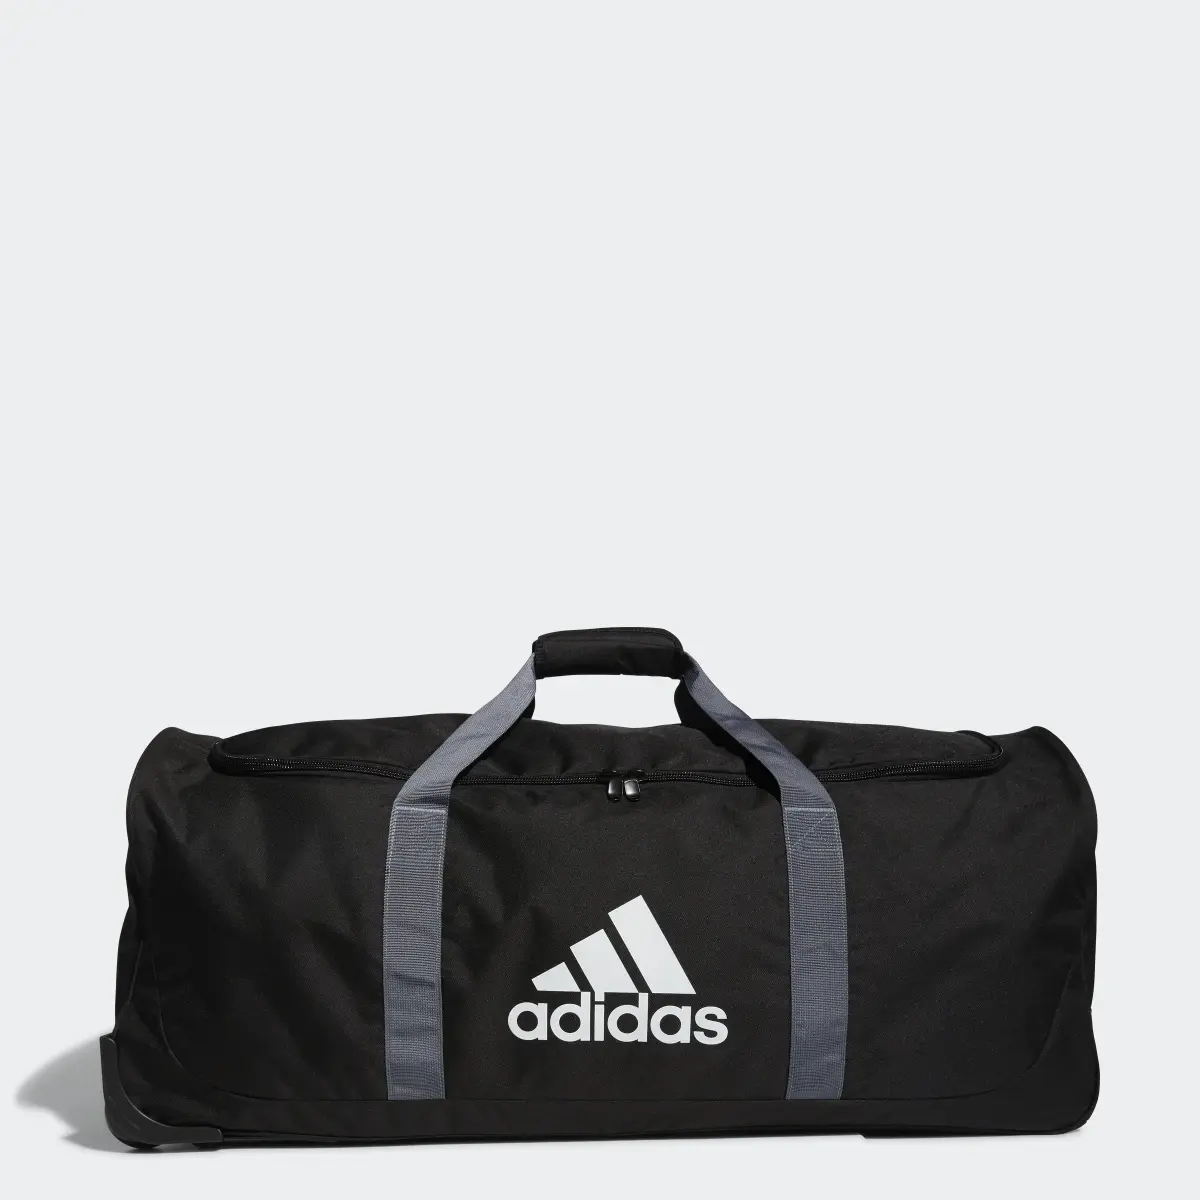 Adidas Team Wheel Bag XL. 1